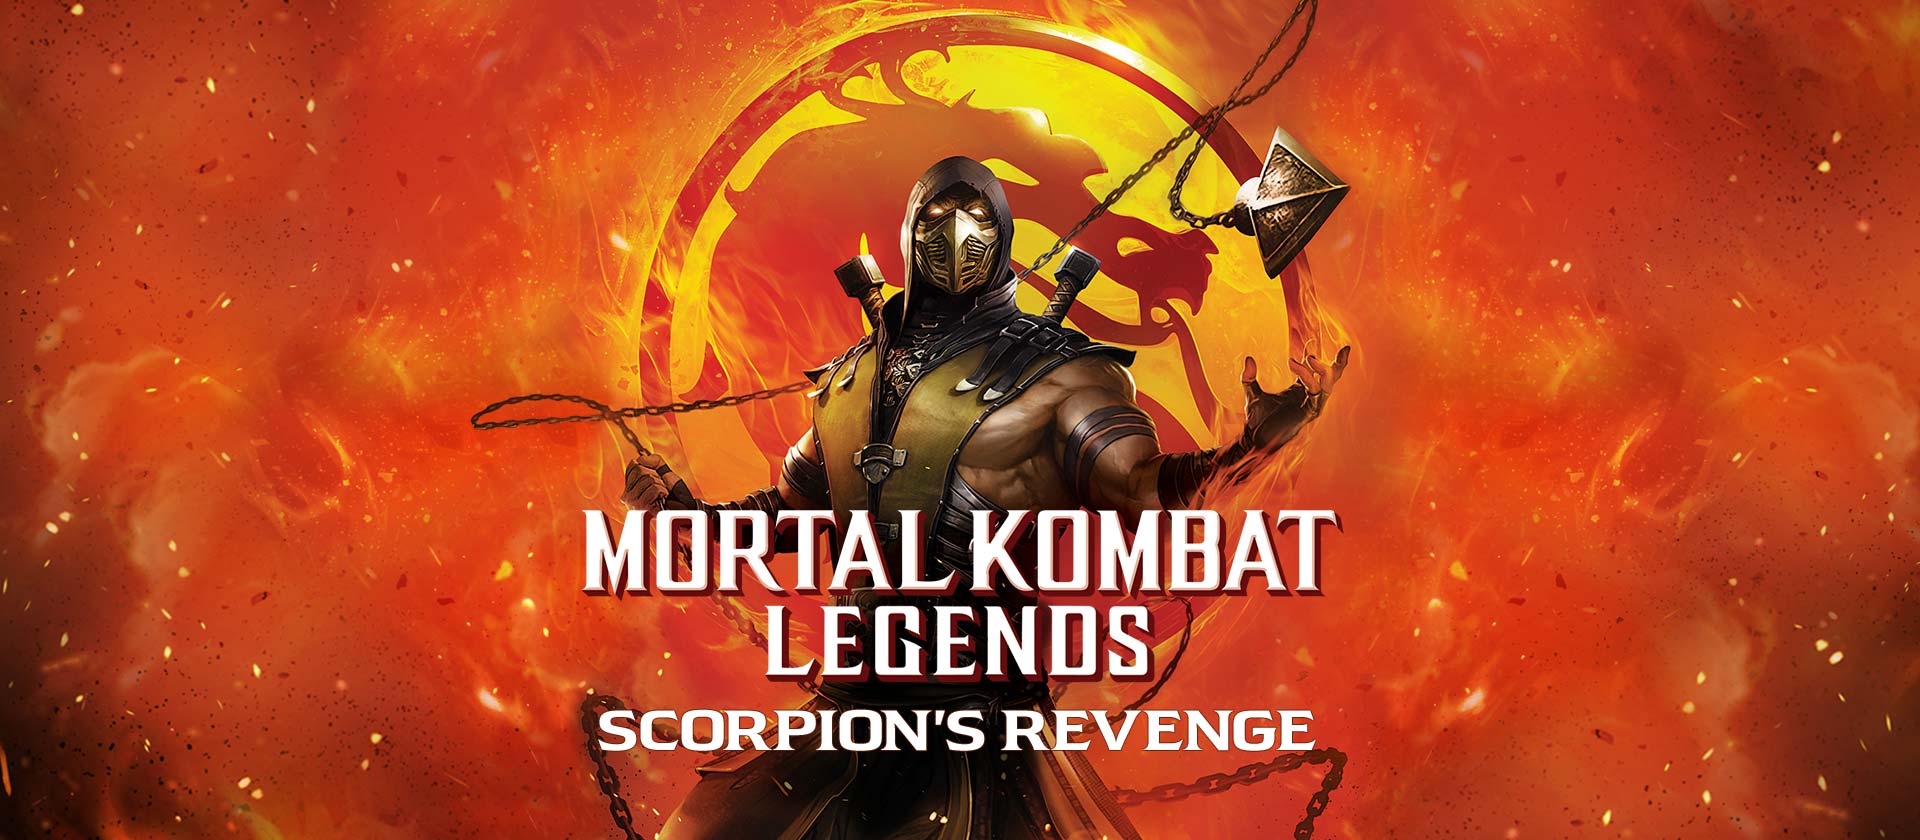 MKL-Scorpions Revenge Wallpaper